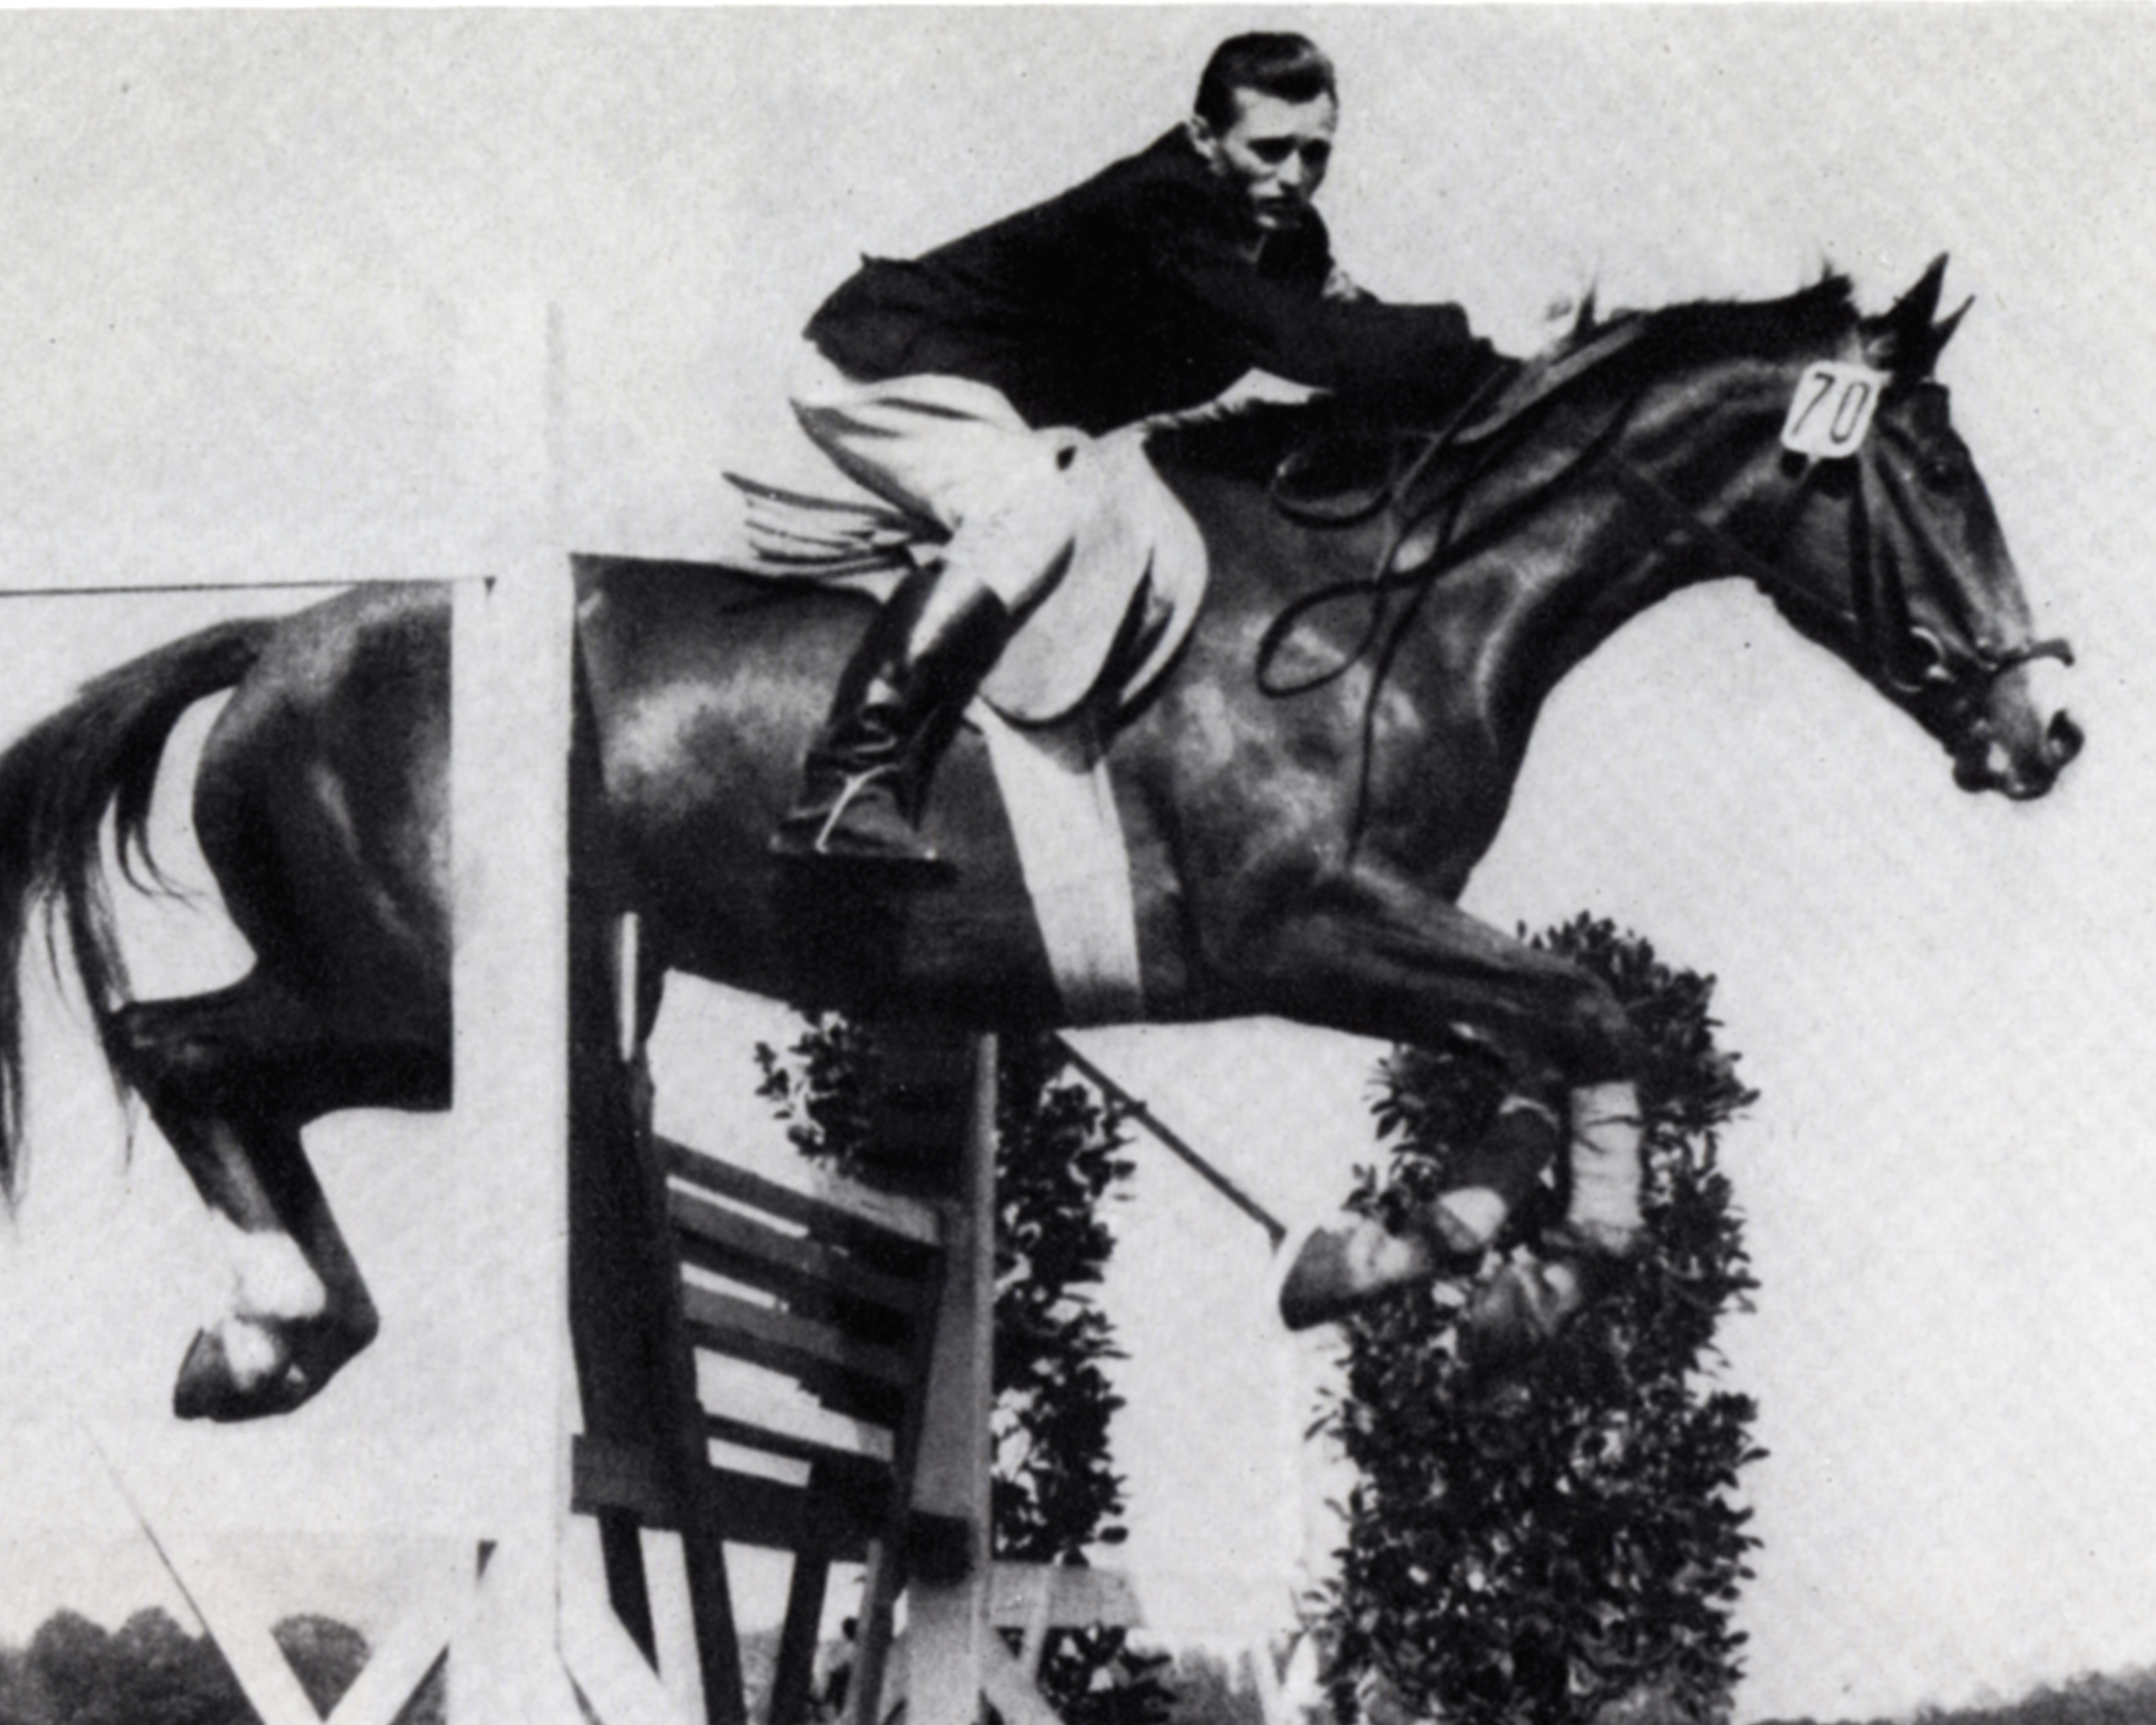 Zu den ersten Akteuren des Pferdesports der DDR, die Geschichte geschrieben haben, gehört Siegfried Hochloch, der ursprünglich aus Rostock stammt (hier 1954 mit der Stute Linde). Später war er erfolgreicher Springreiter beim Armeesportclub Potsdam und nach seiner aktiven Zeit viele Jahre als Trainer beim ASK tätig. Foto: Menzendorf